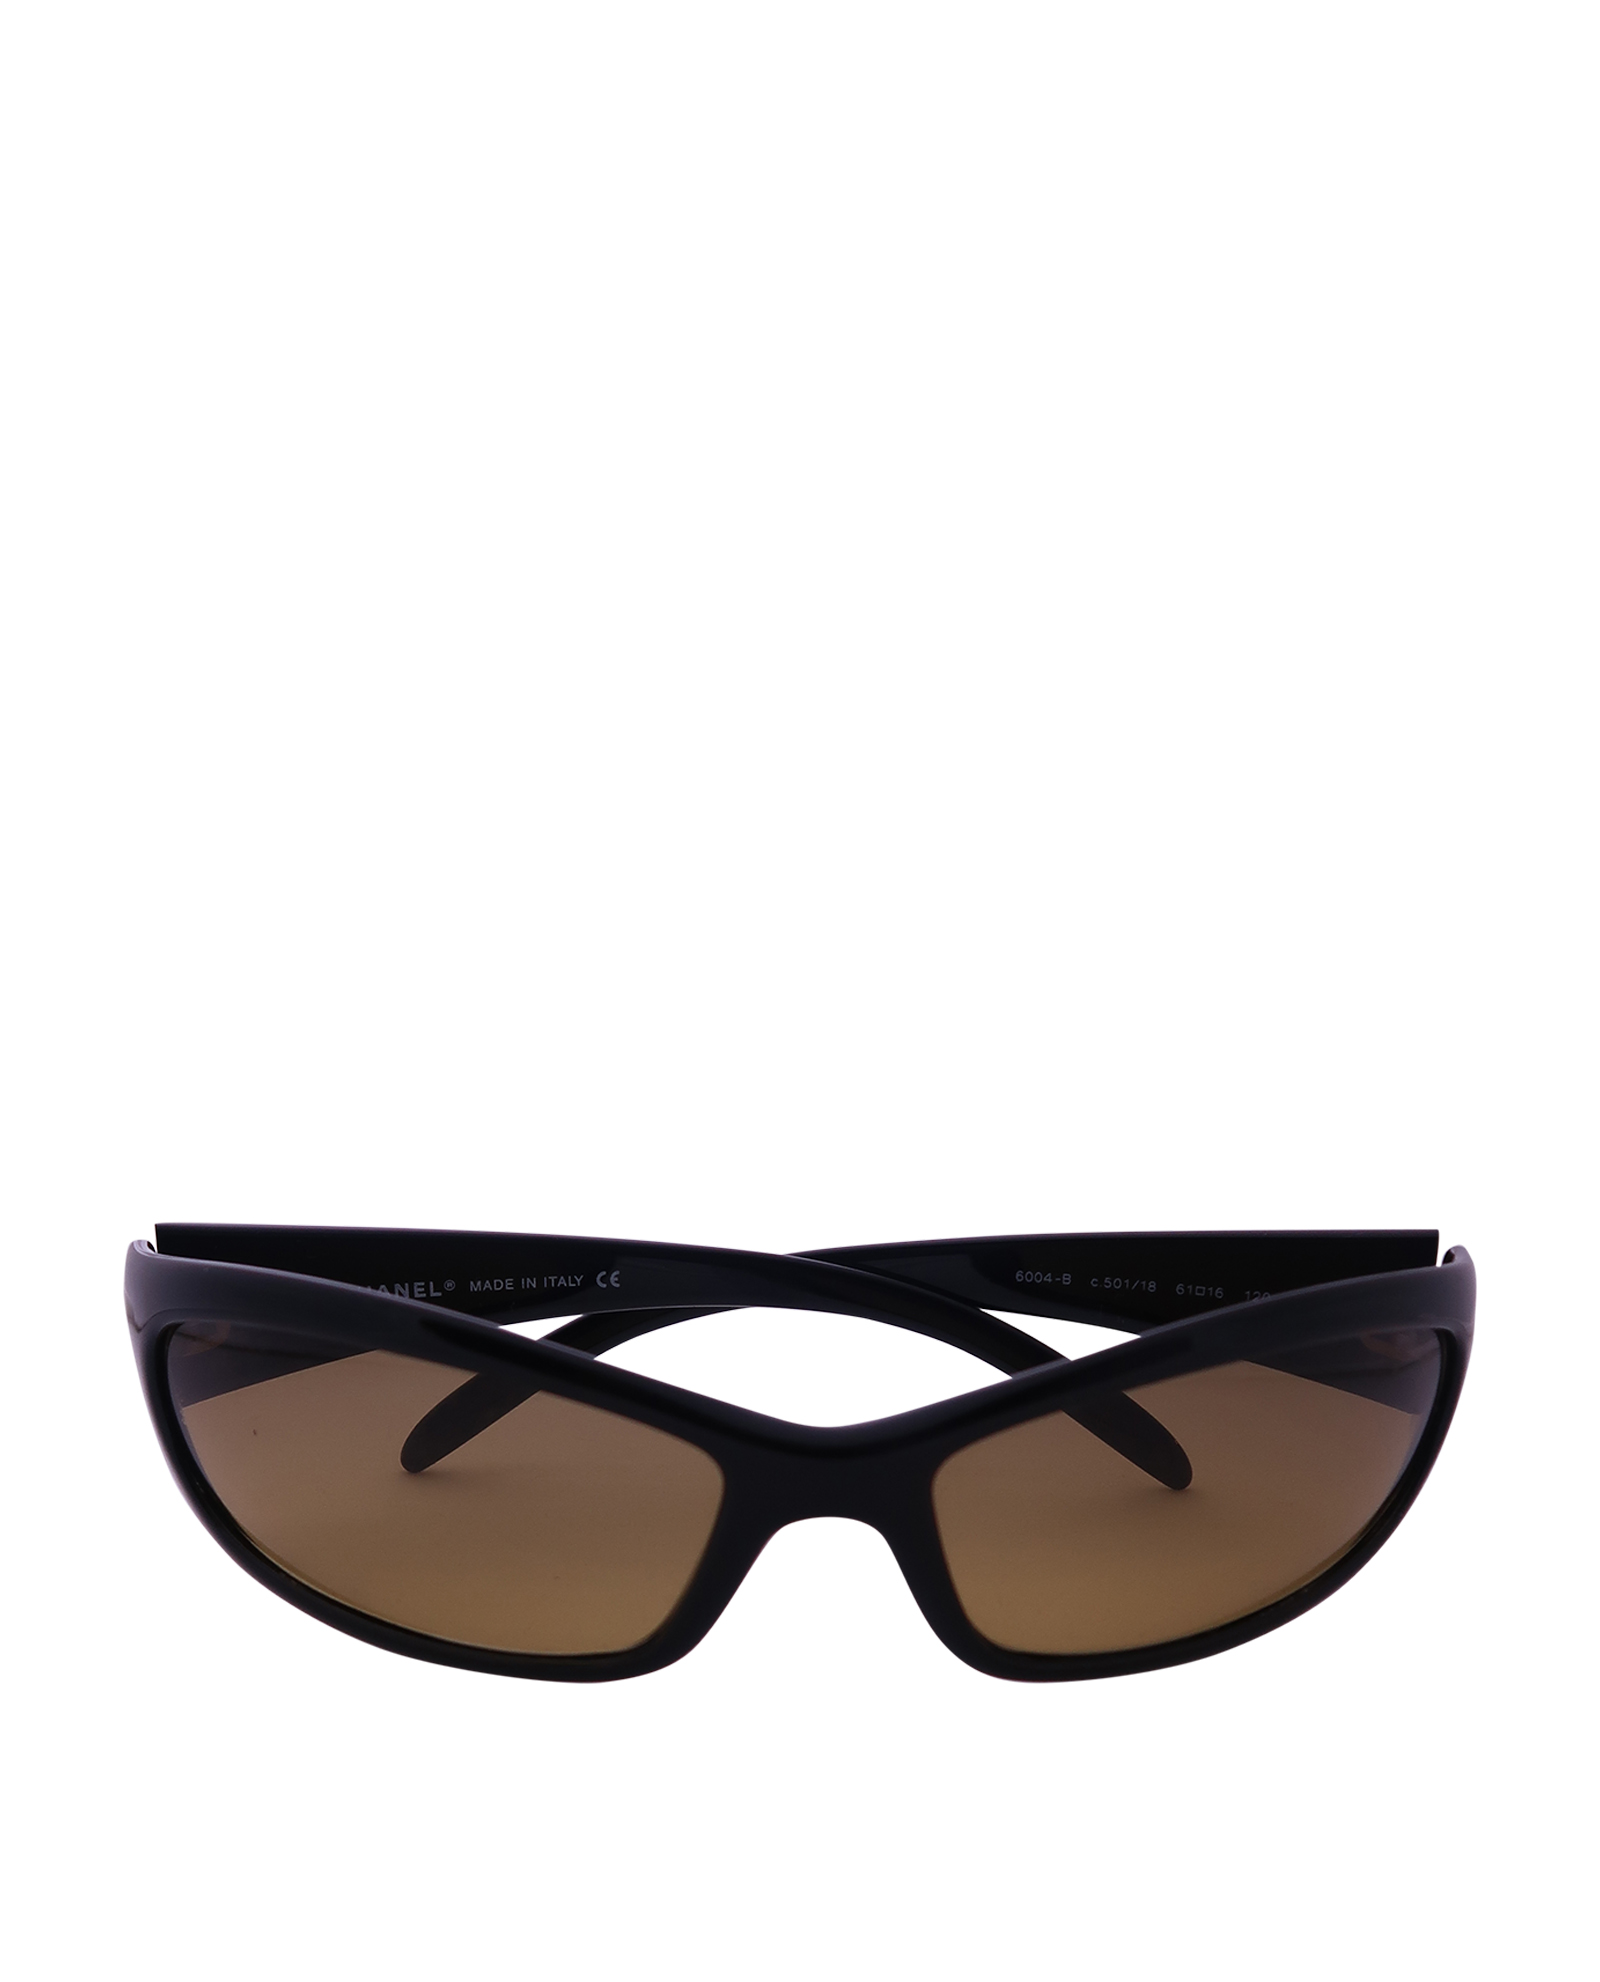 Chanel 6004-B Sunglasses